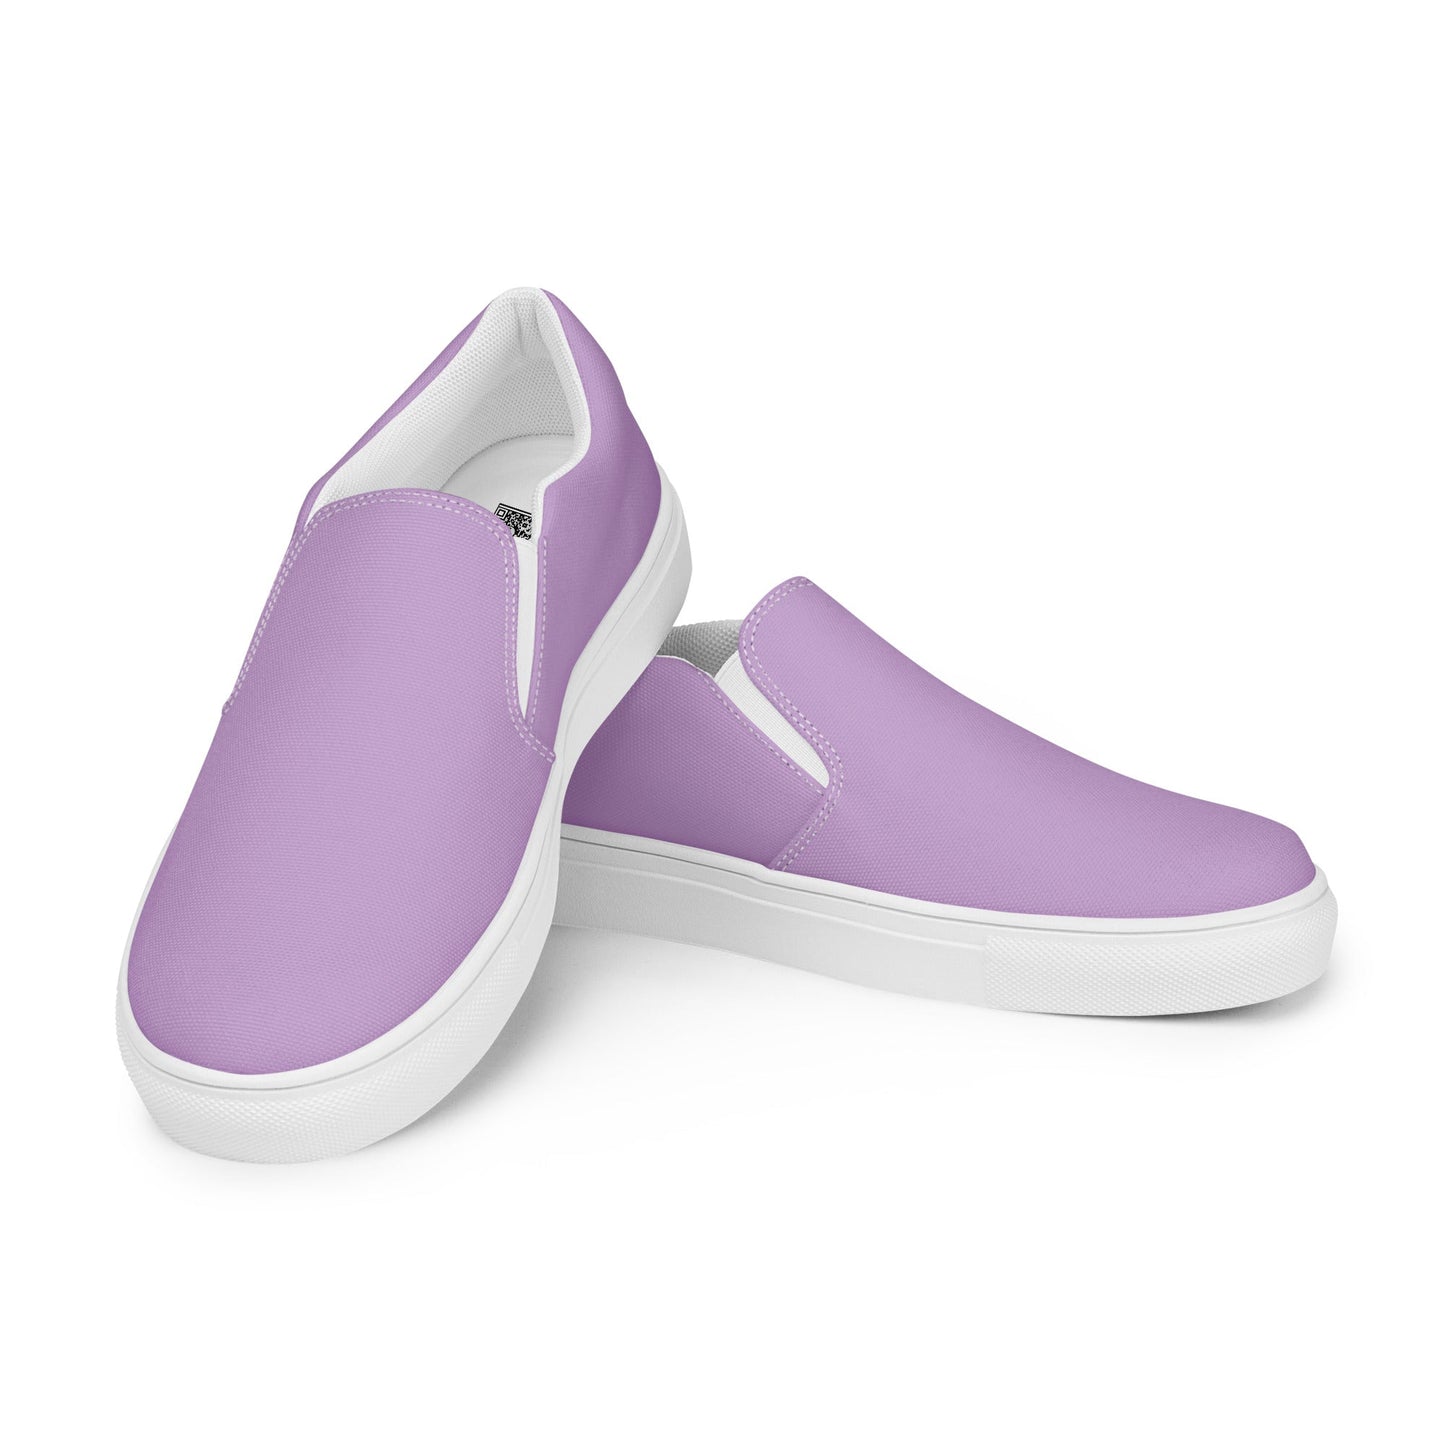 klasneakers Women’s slip-on canvas shoes - Pinky Purple